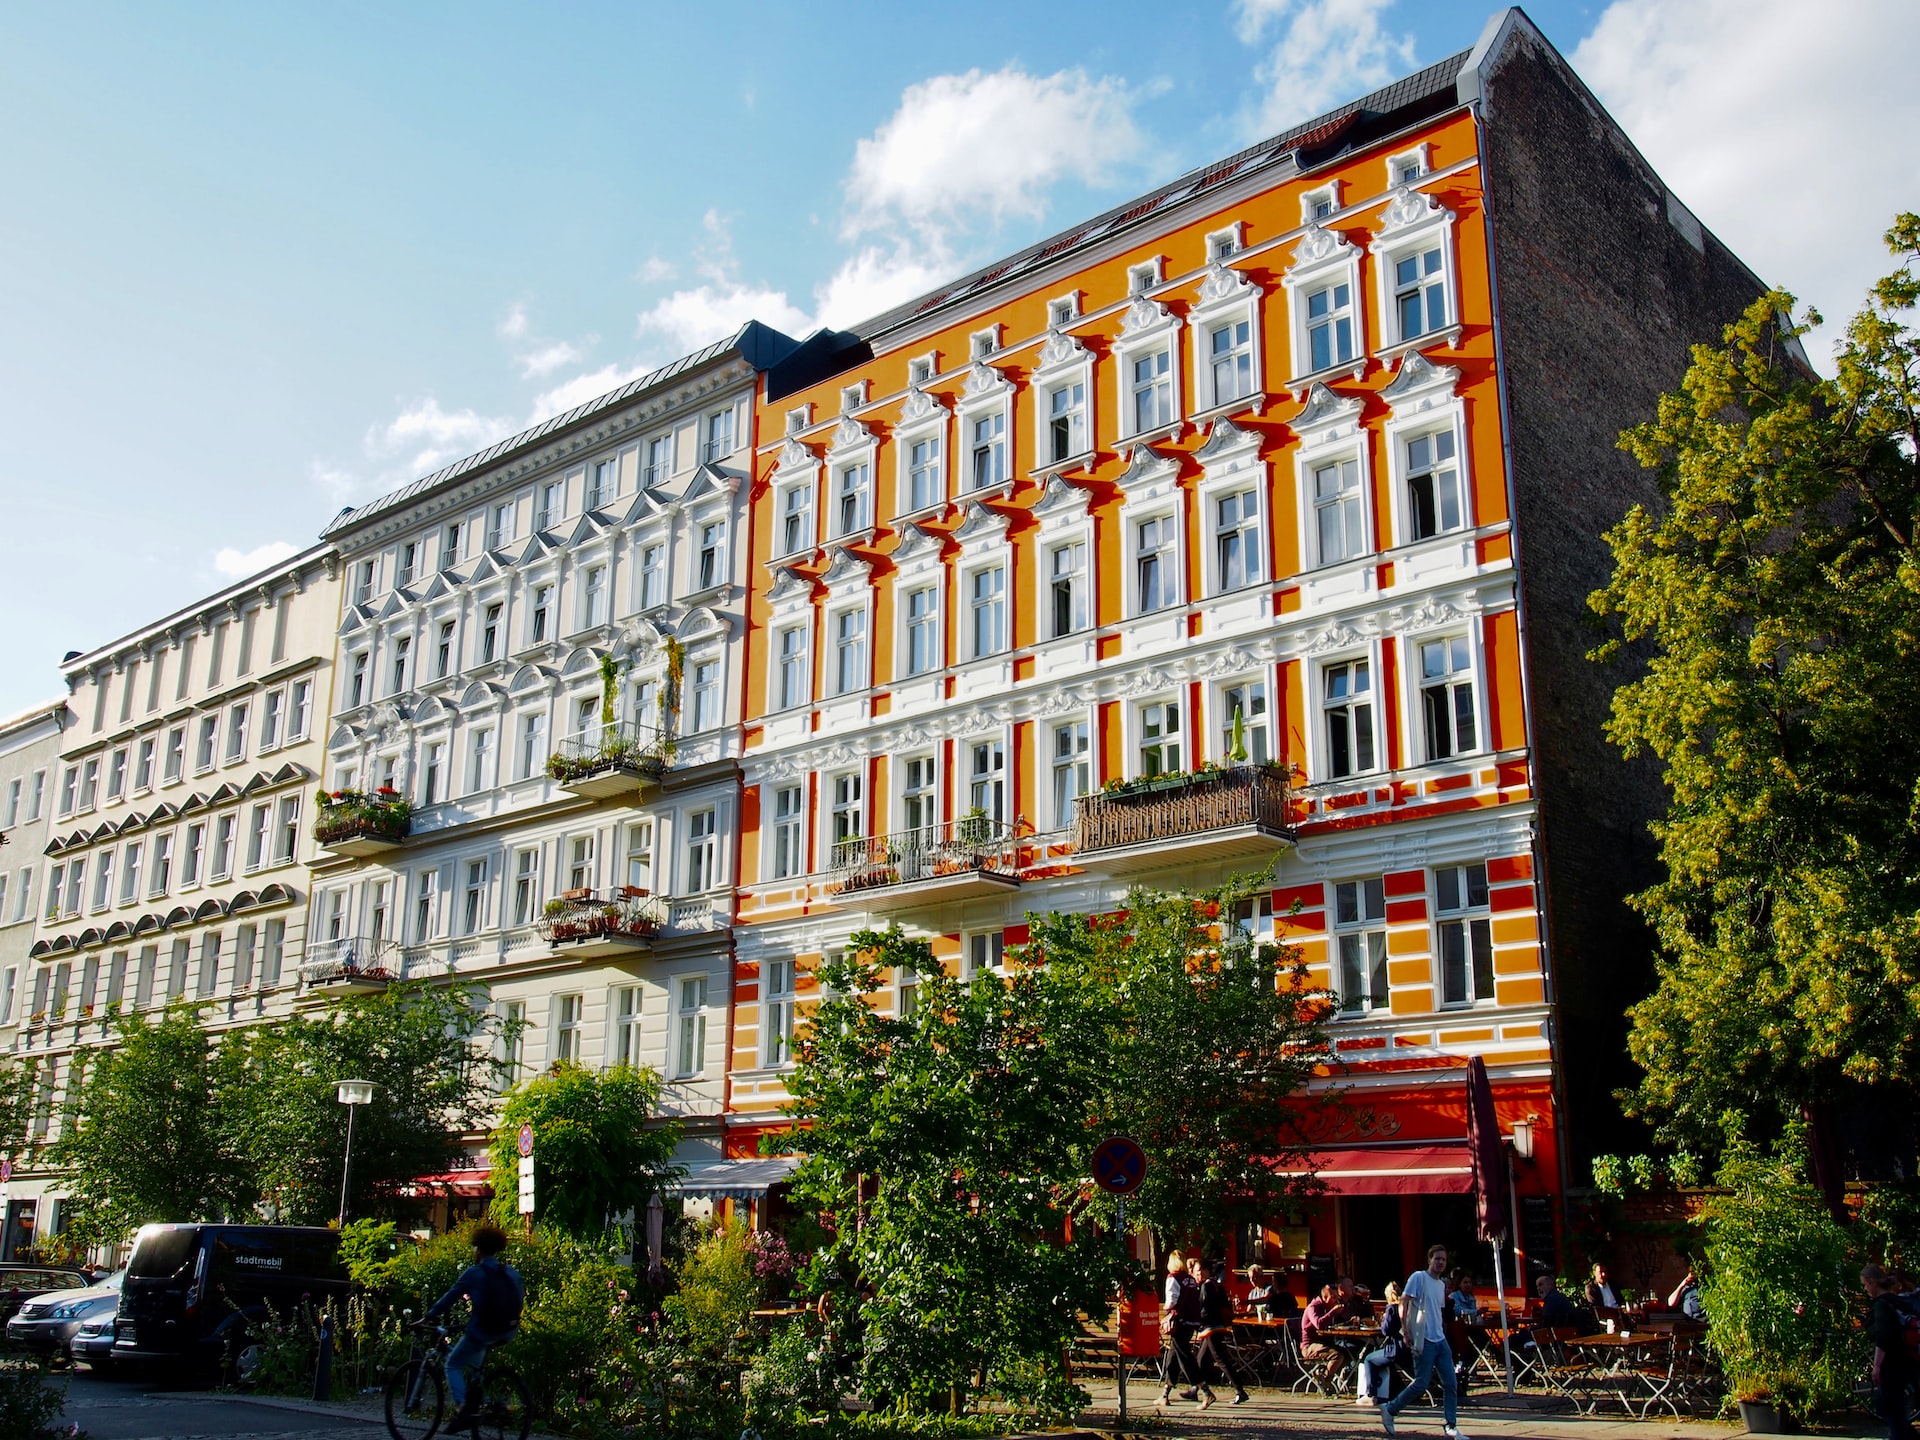 El barrio hipster por excelencia en Berlín, Kreuzberg es un centro de vida nocturna y una de las mejores zonas donde alojarse en Berlín para jóvenes en busca de diversión